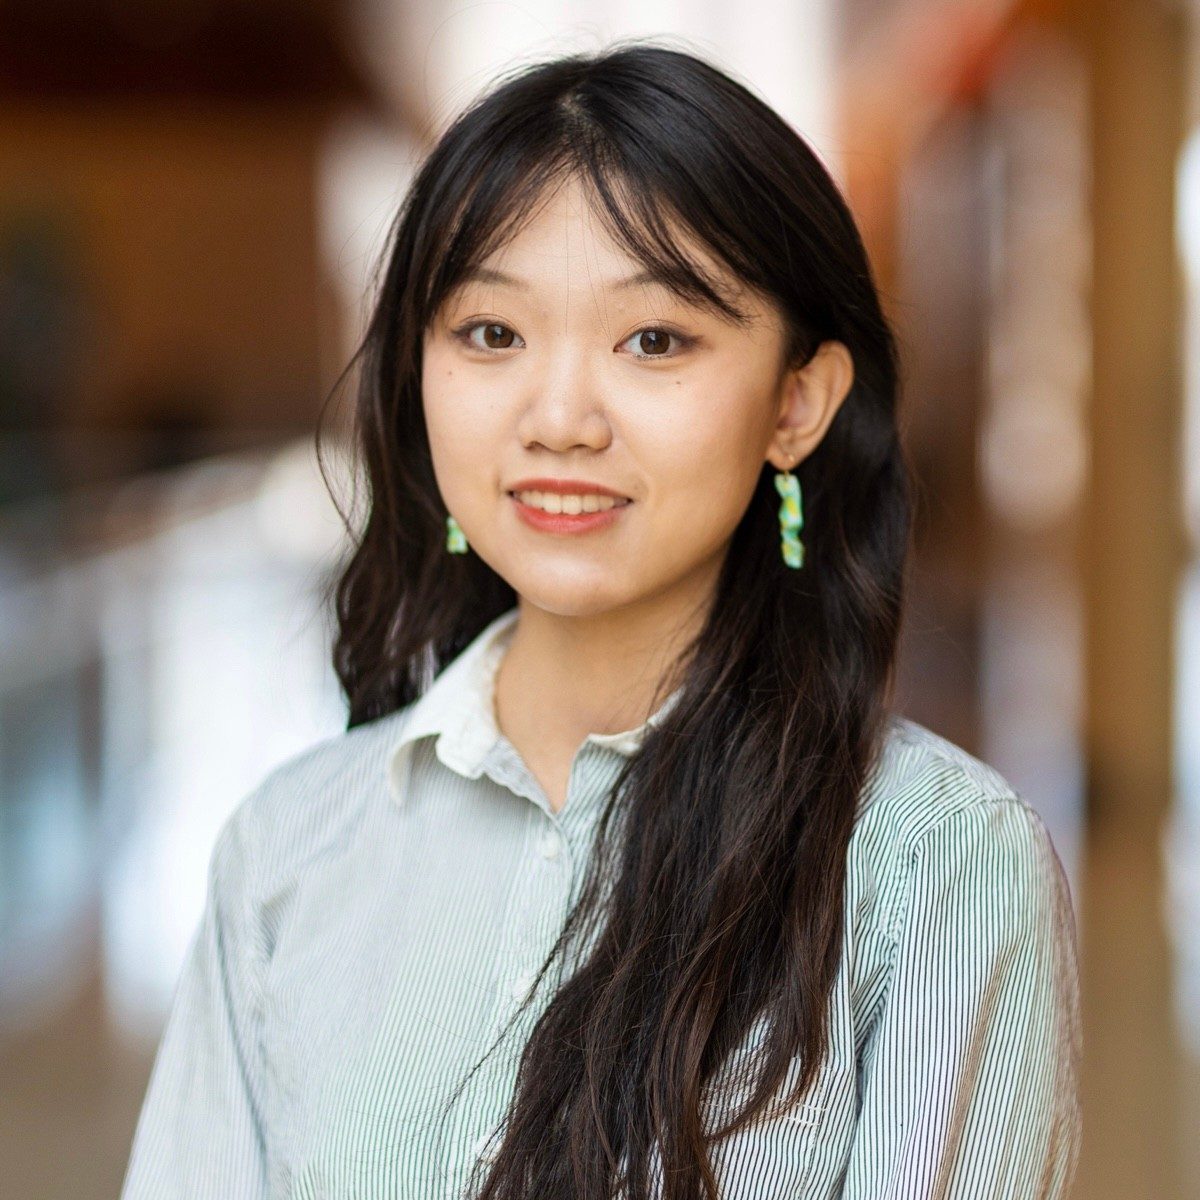 Professional headshot image of Yueyao (Willow) Zhou